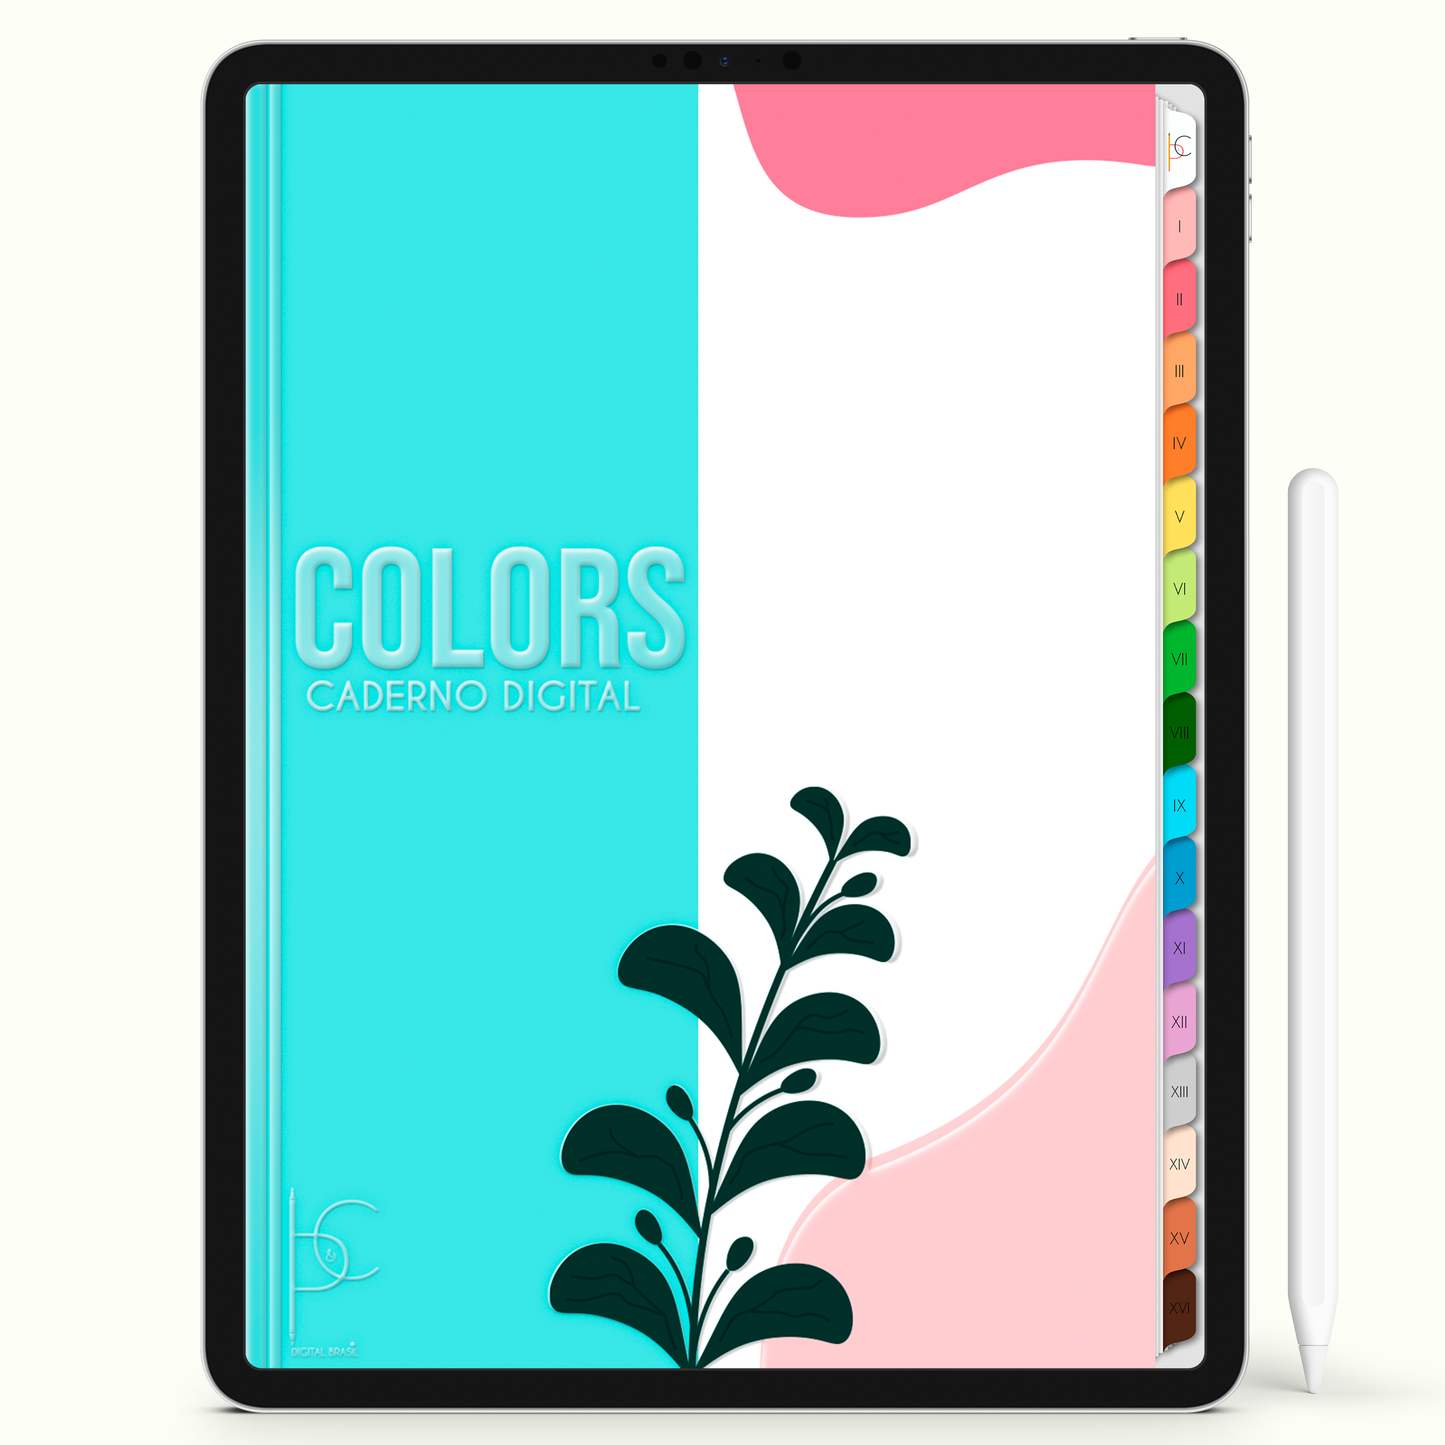 Caderno Digital Colors Flores ao Vento 16 Matérias • Para iPad e Tablet Android • Download instantâneo • Sustentável